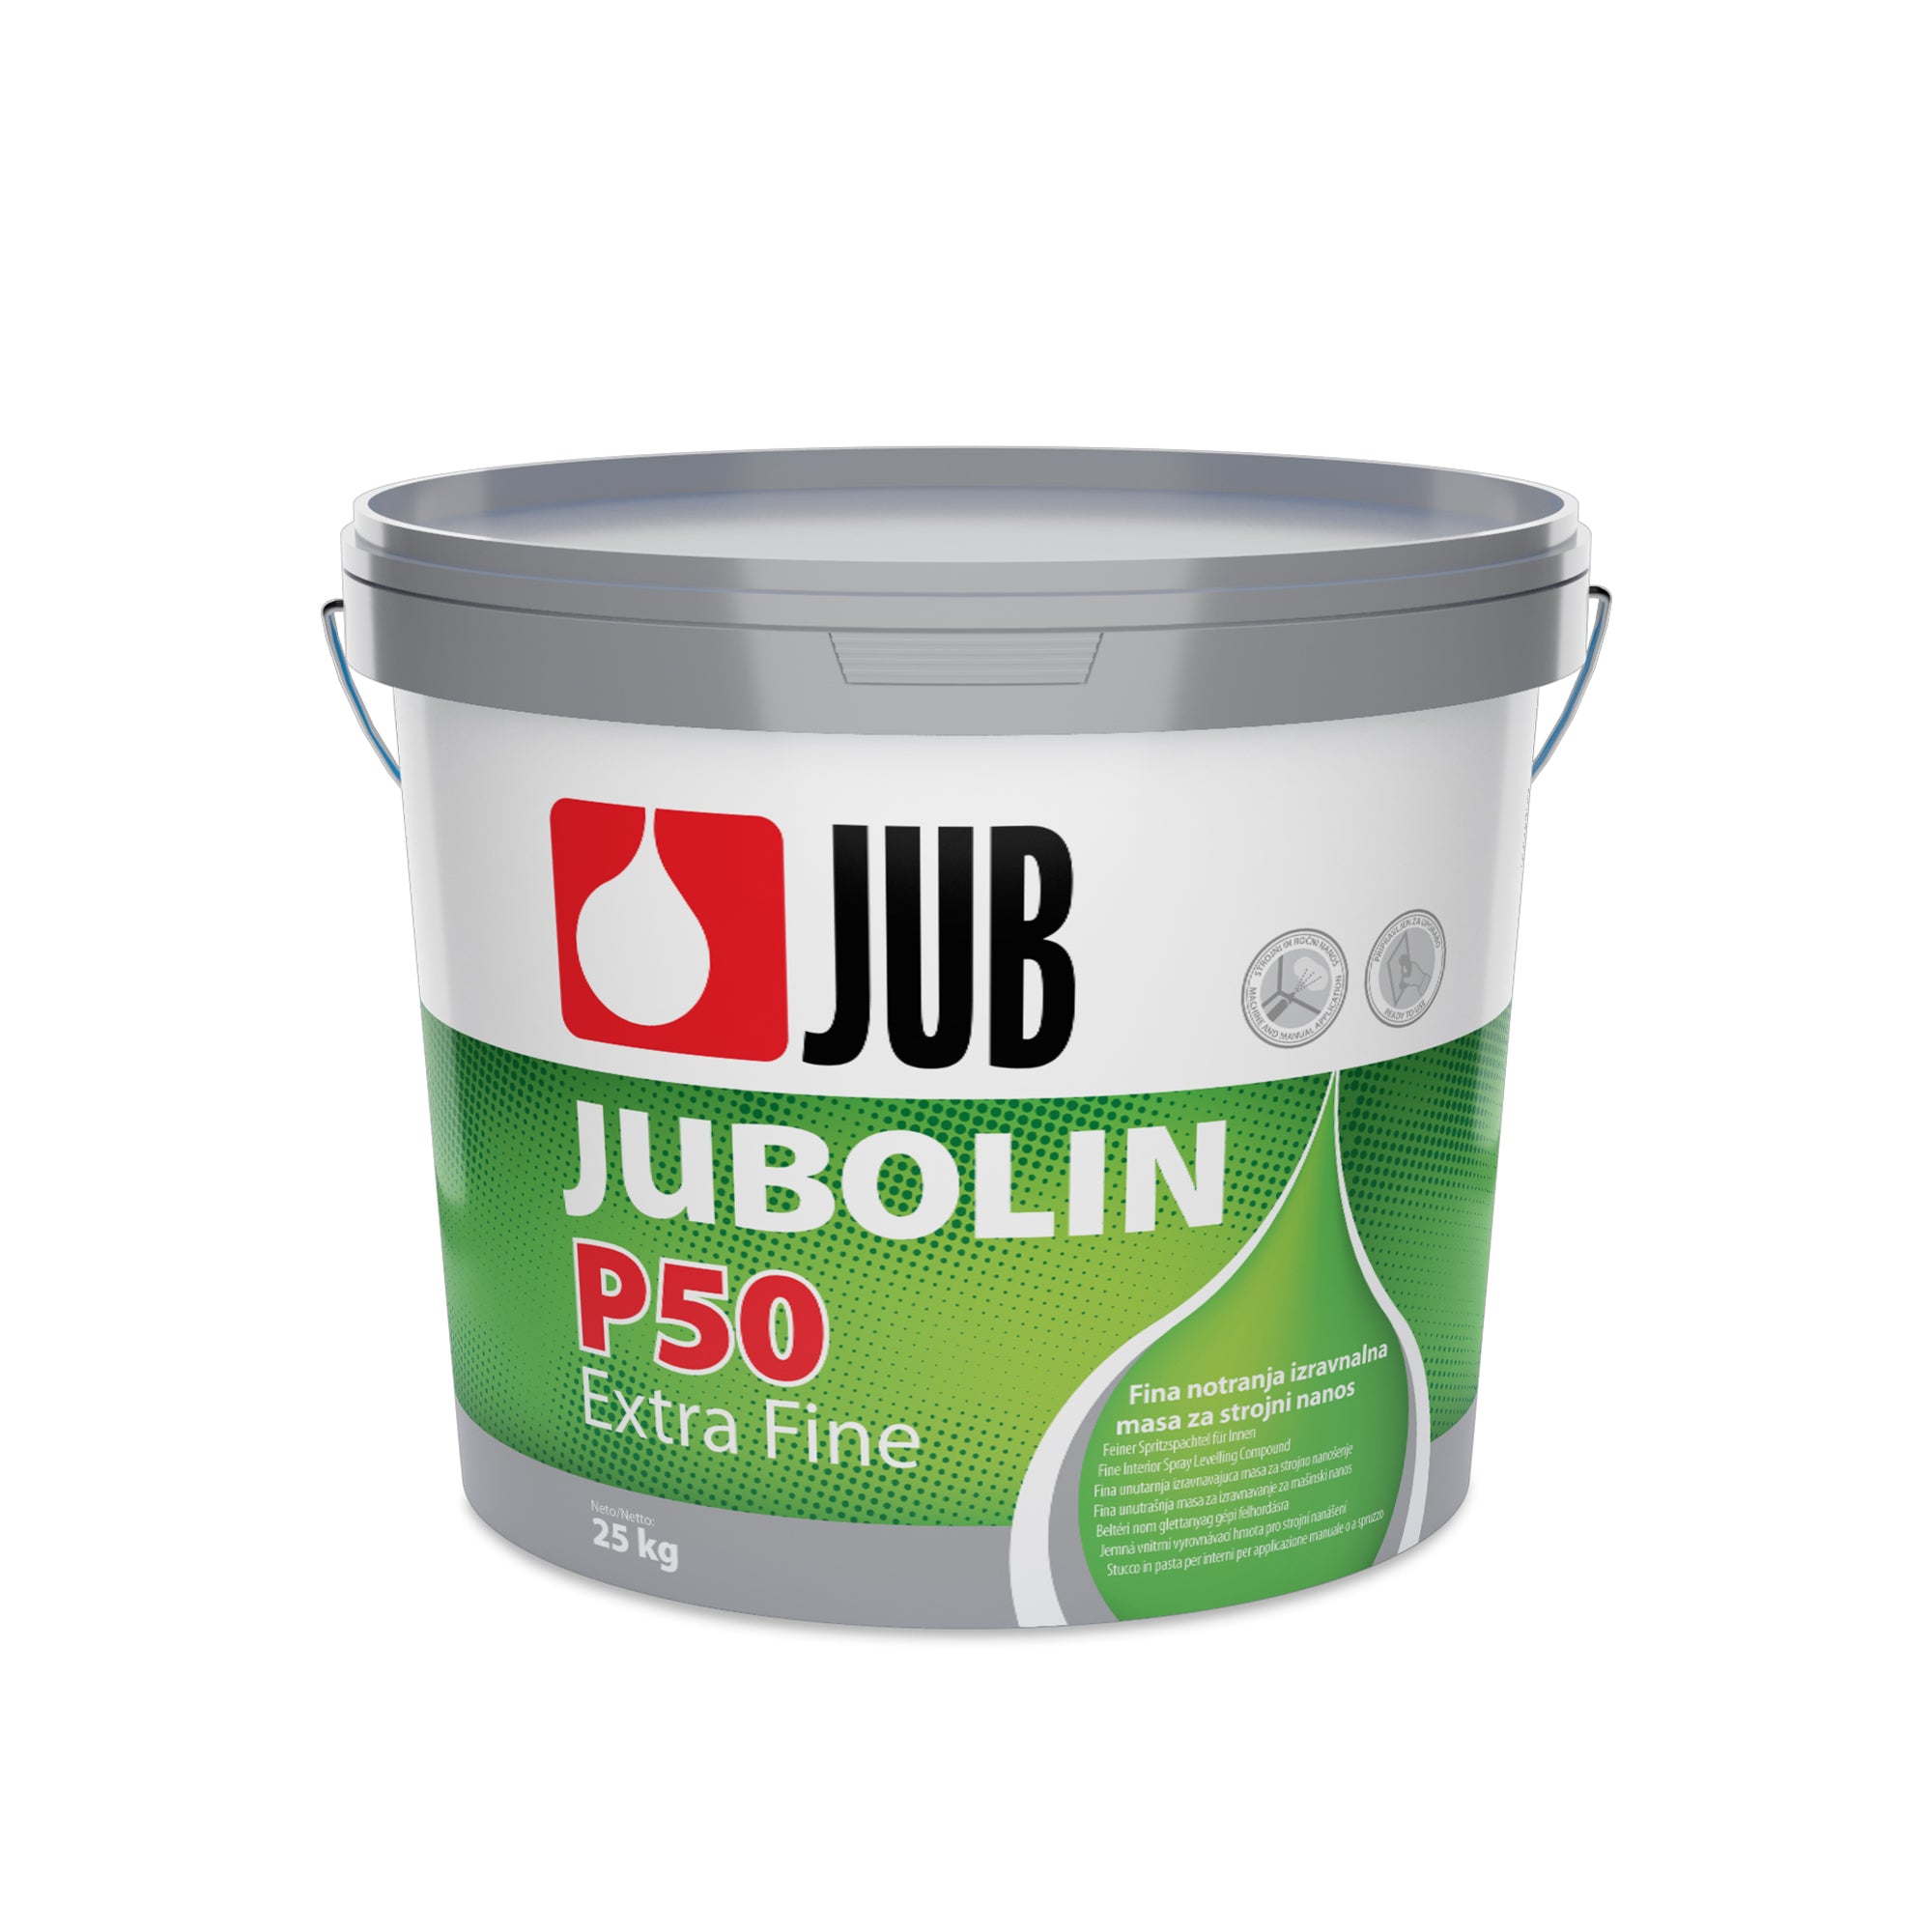 JUB JUBOLIN P50 Extra Fine disperzný extra jemný stierkový tmel 25 kg